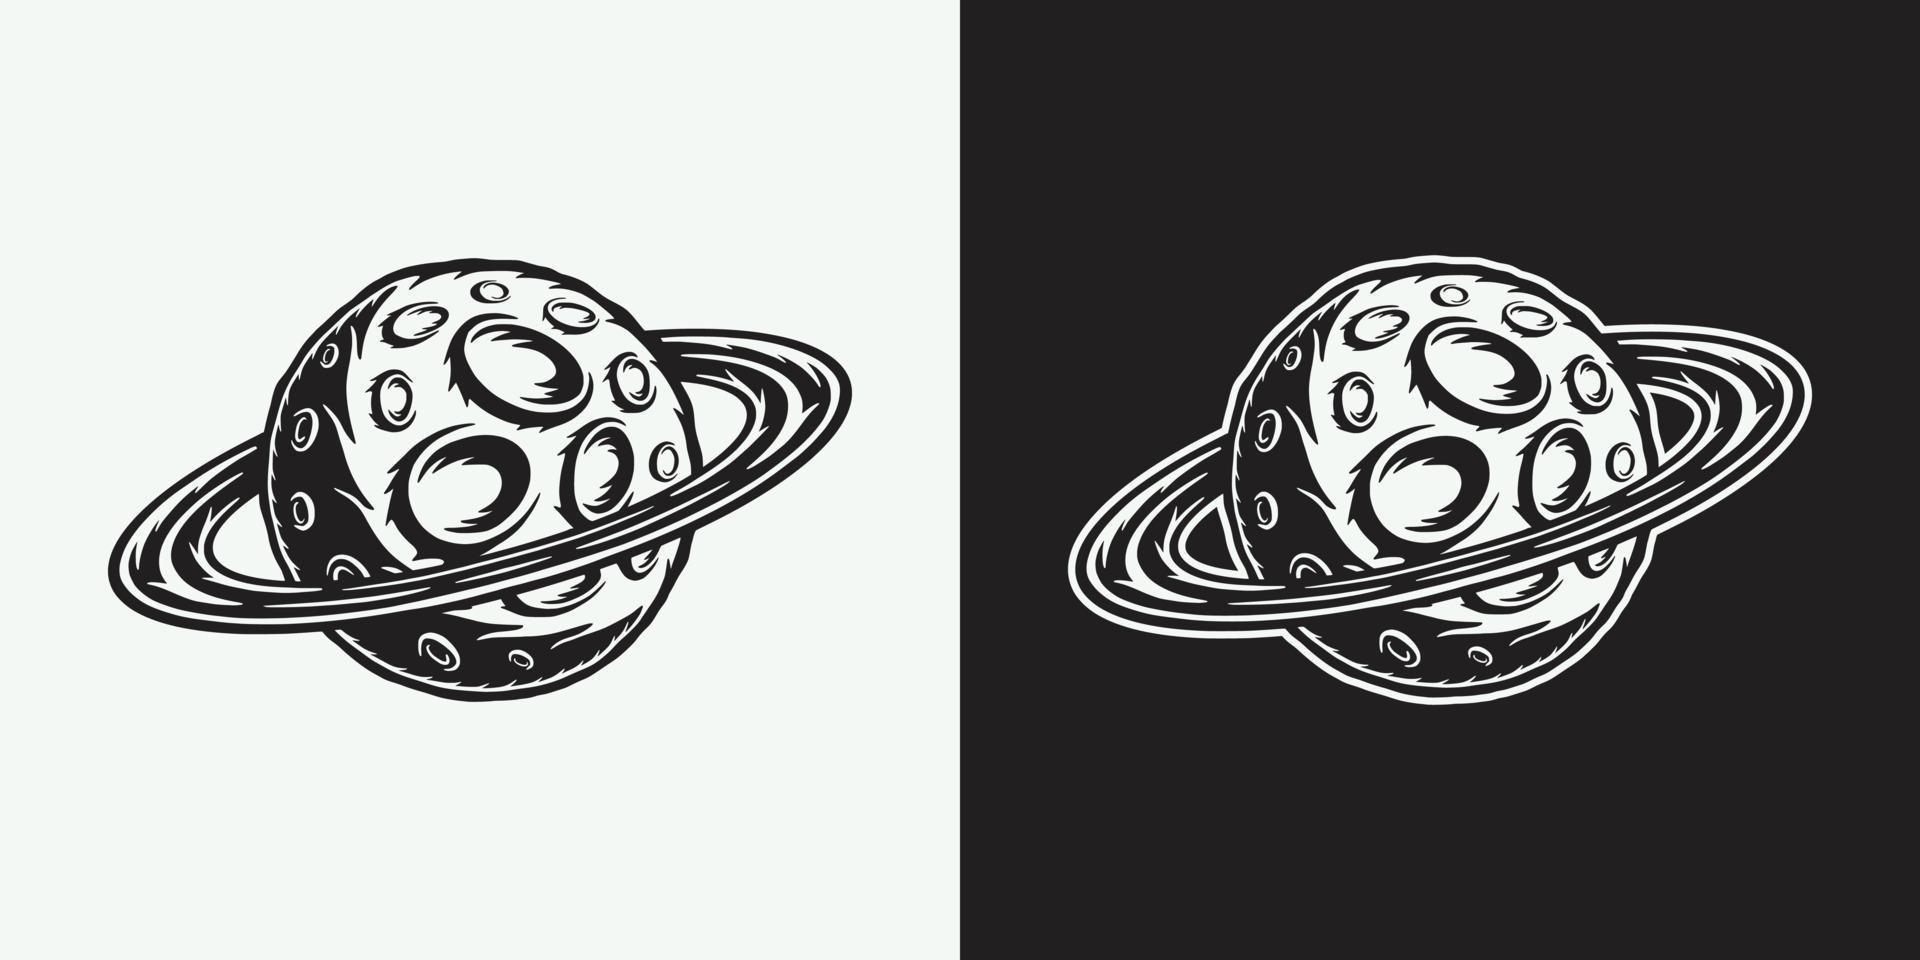 Vintage Retro-Weltraum-Galaxie-Planet. kann für logo, abzeichen, etikett verwendet werden. markieren, plakatieren oder drucken. monochrome Grafik. Vektor-Illustration. Holzschnitt Linschnitt alt vektor